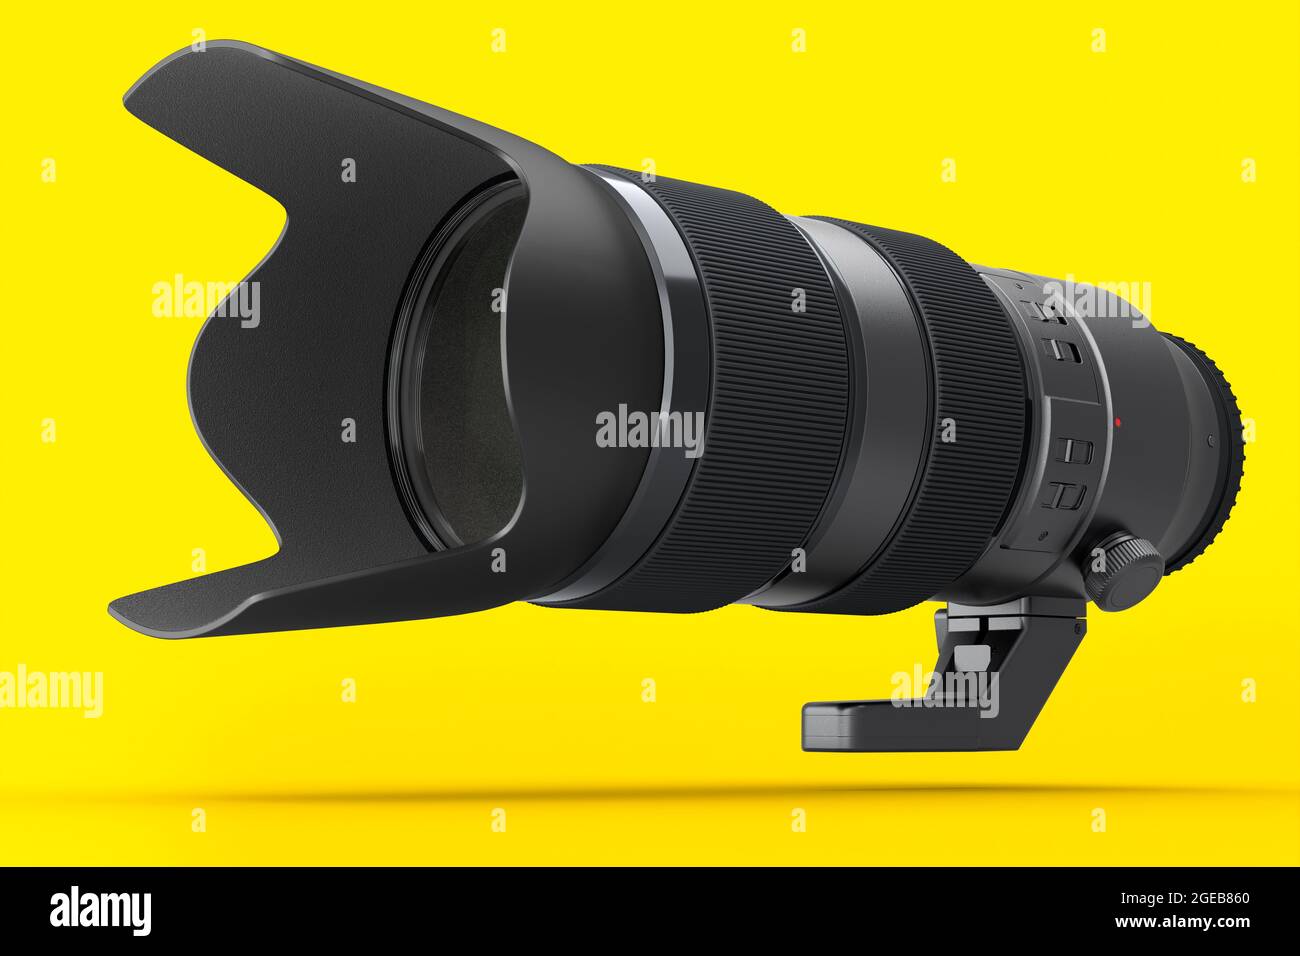 Moderna e inexistente lente de cámara telescópica DSLR sobre fondo amarillo. 3D Representación e ilustración de equipo de fotografía profesional para transmisión en directo Foto de stock